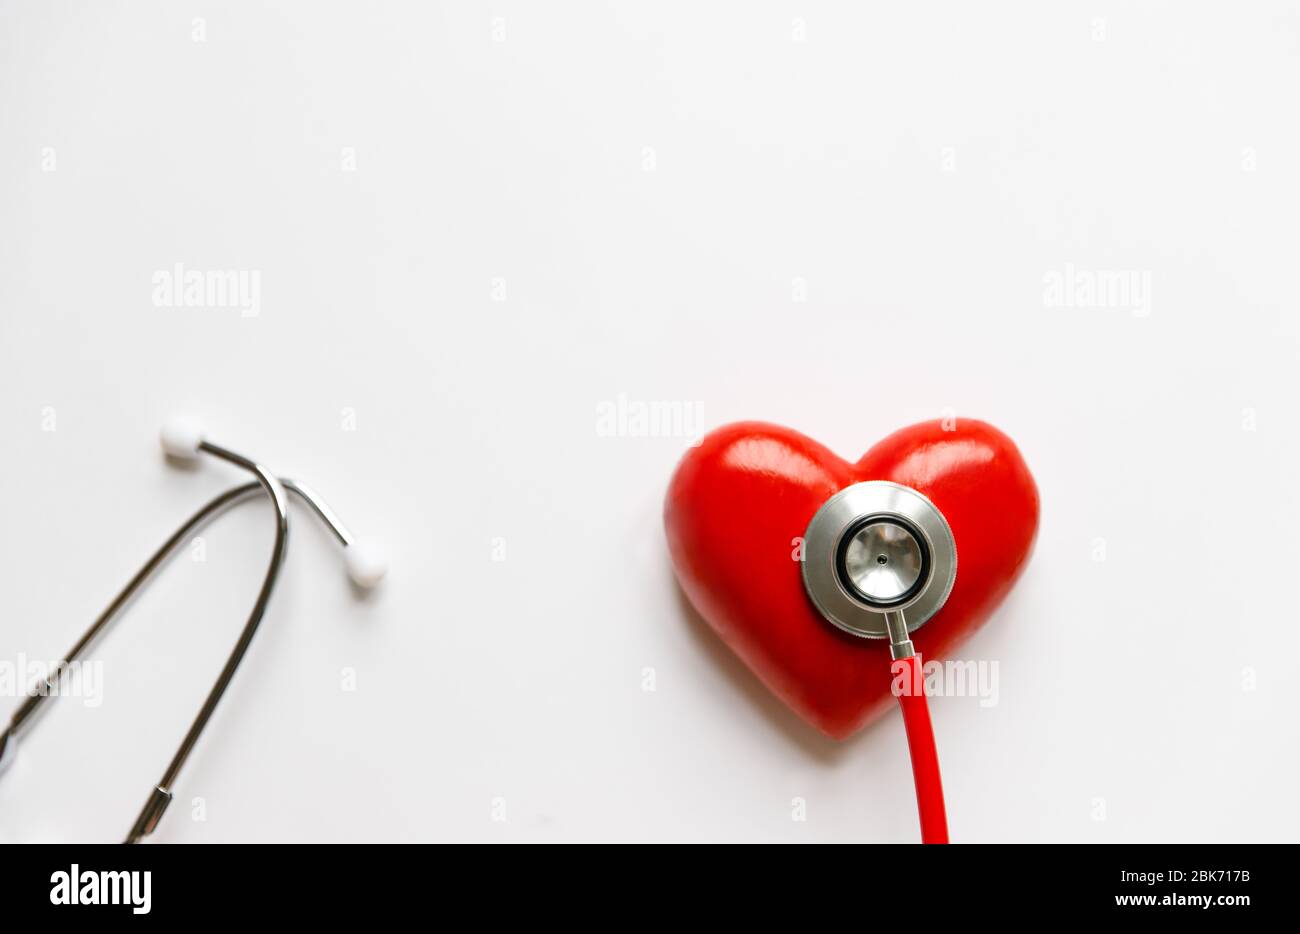 Primo piano dello stetoscopio sul cuore rosso - dispositivo medico diagnostico per l'auscultazione (ascolto) dei suoni provenienti dal cuore, bronchi. Isolato su whi Foto Stock